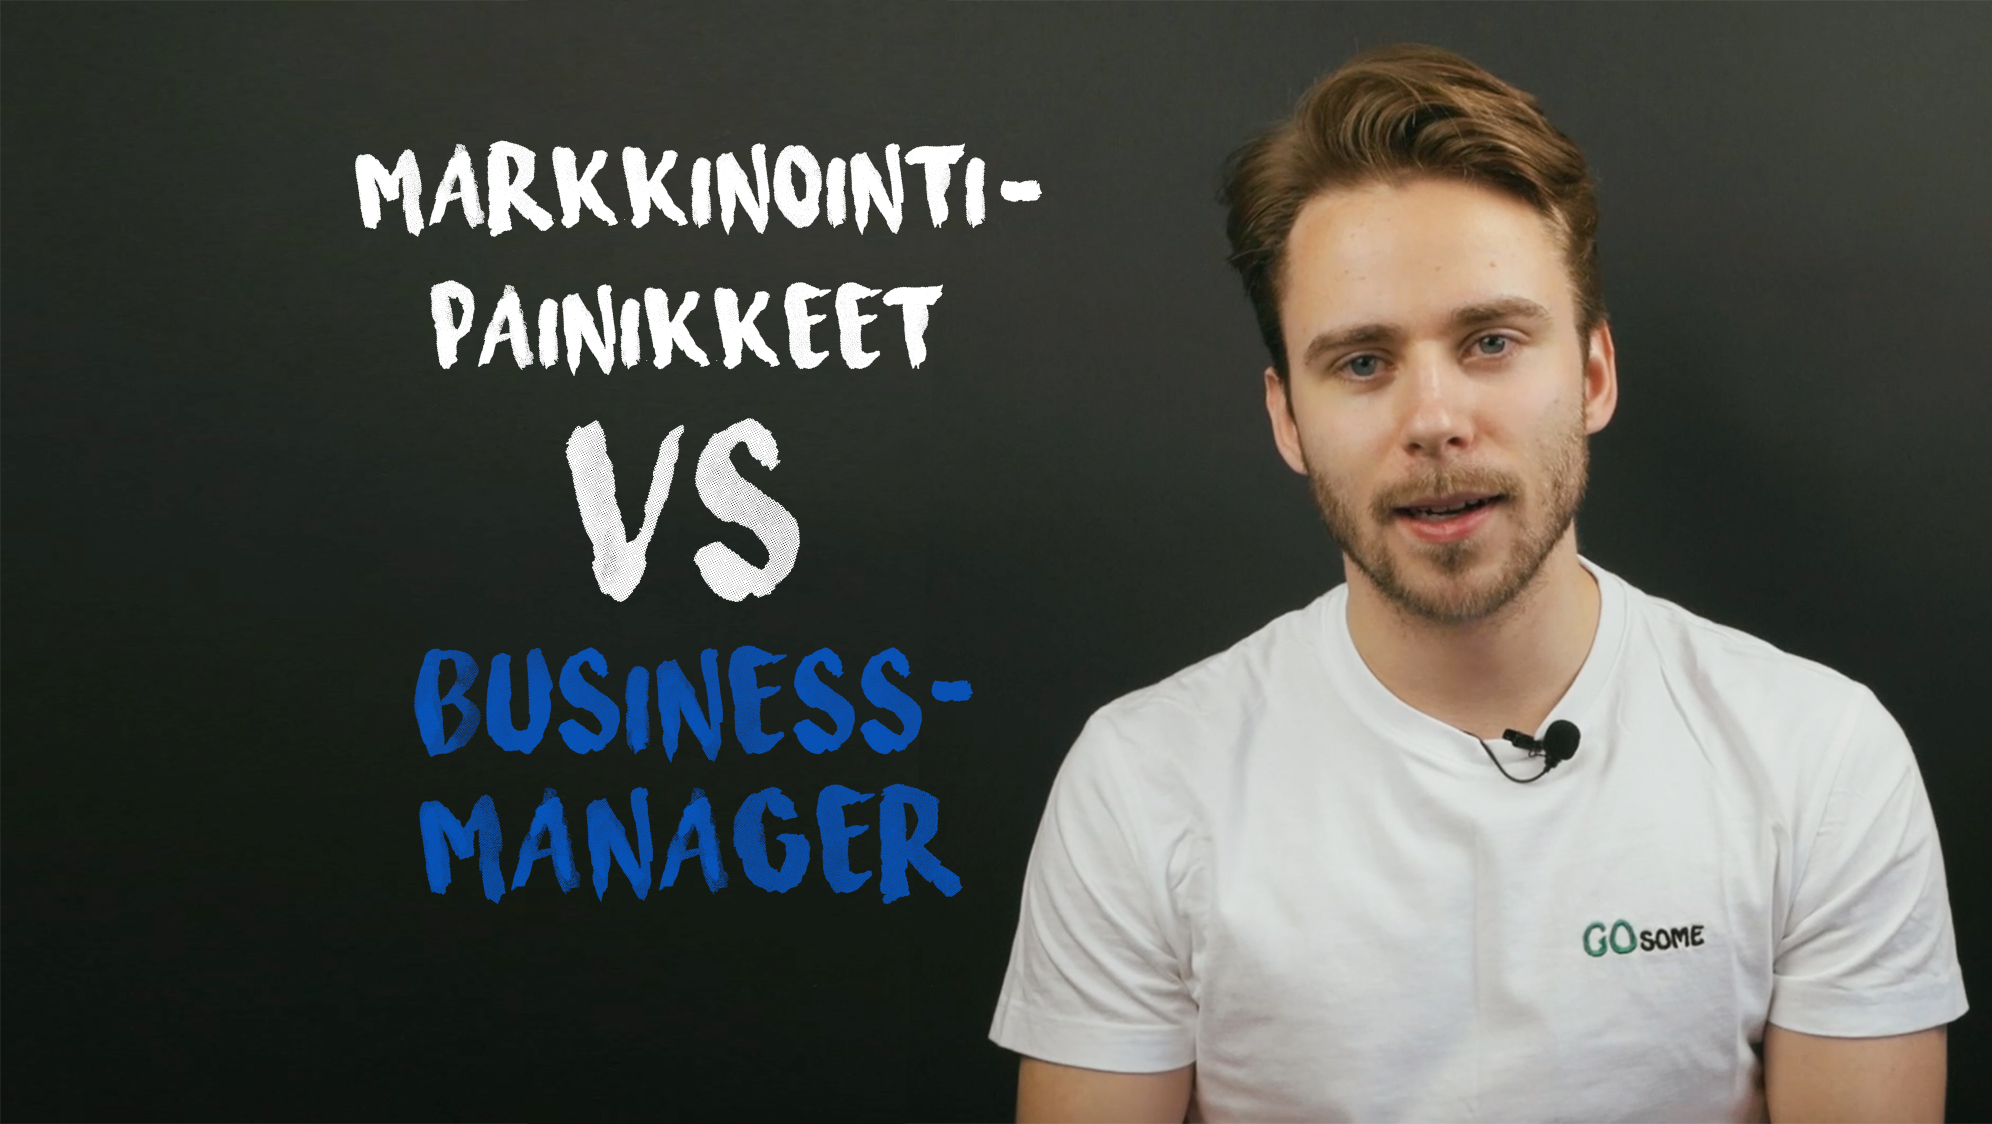 Facebook business manager vs markkinointipainikkeet